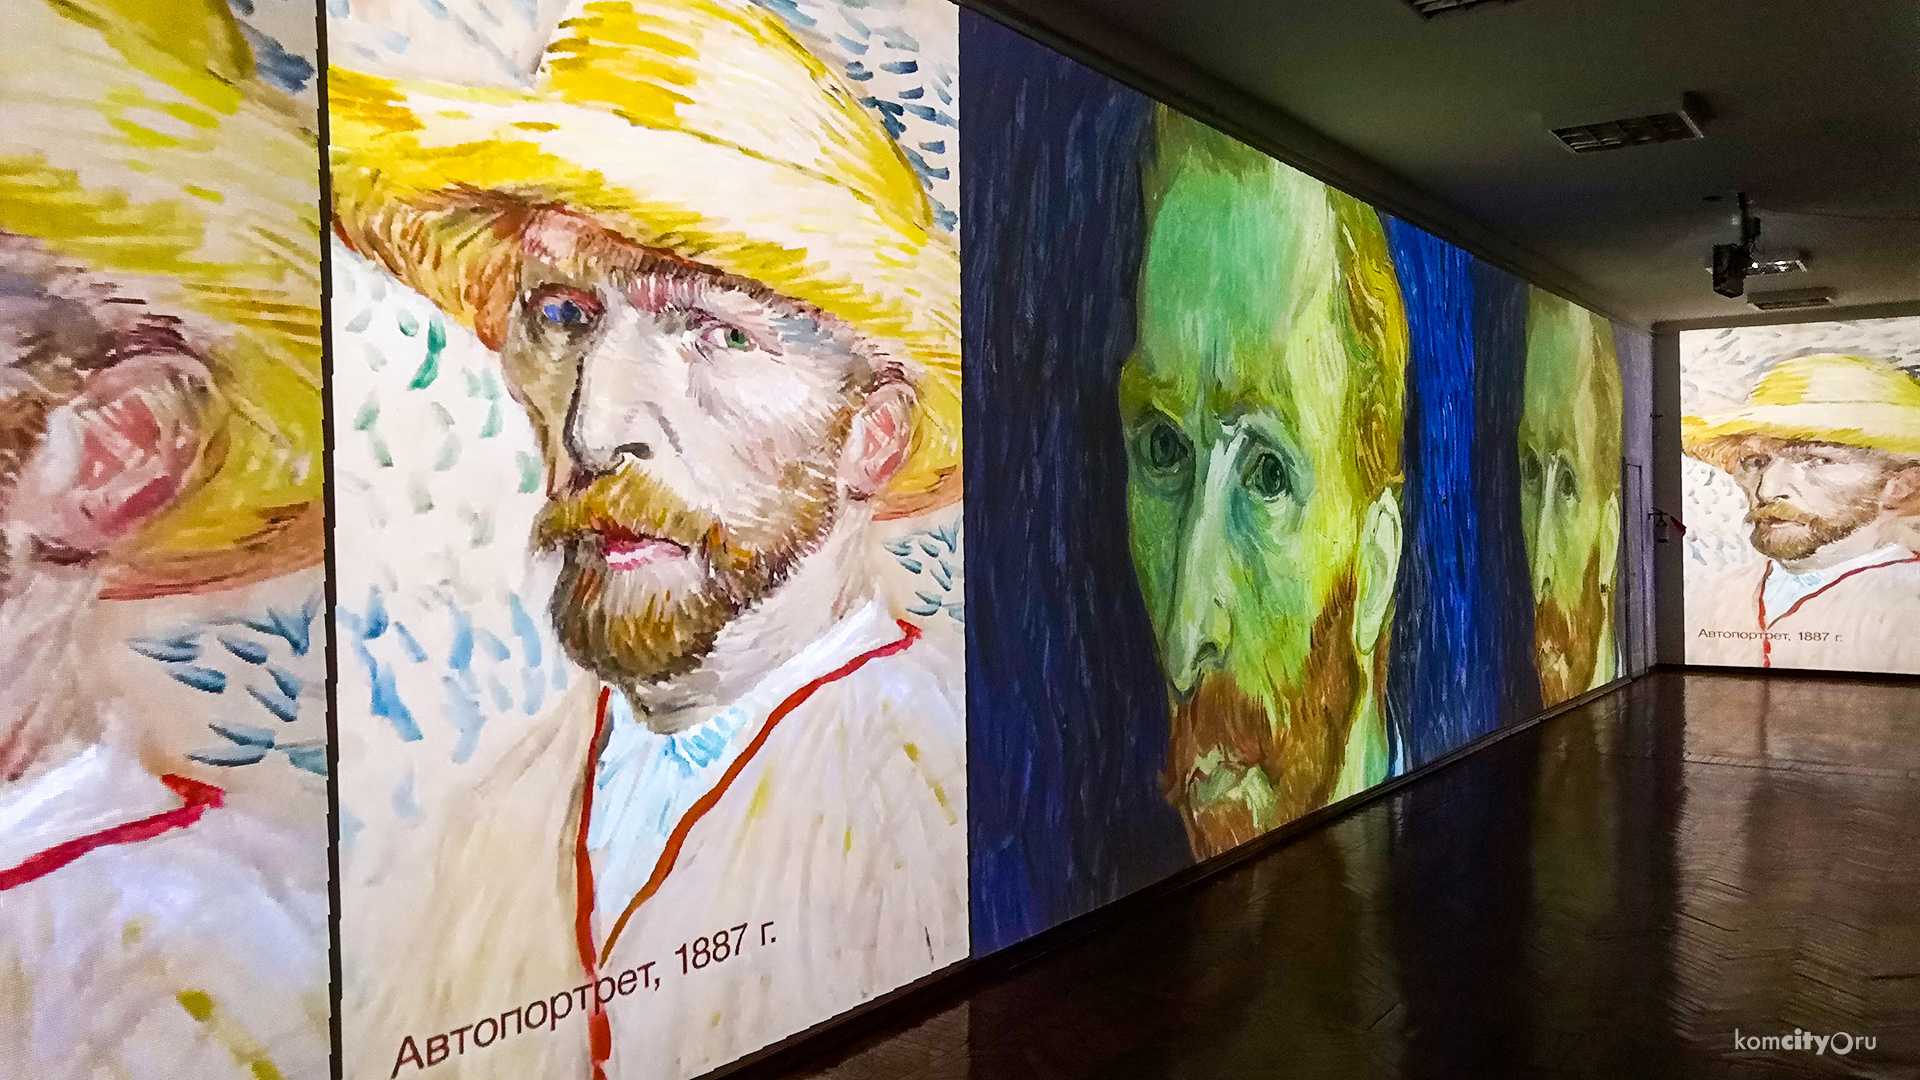 Более 120 работ раннего периода творчества Ван Гога выставлены в нидерландском музее, который располагает второй по величине в мире коллекцией работ художника Возможность составить представление о творческих поисках